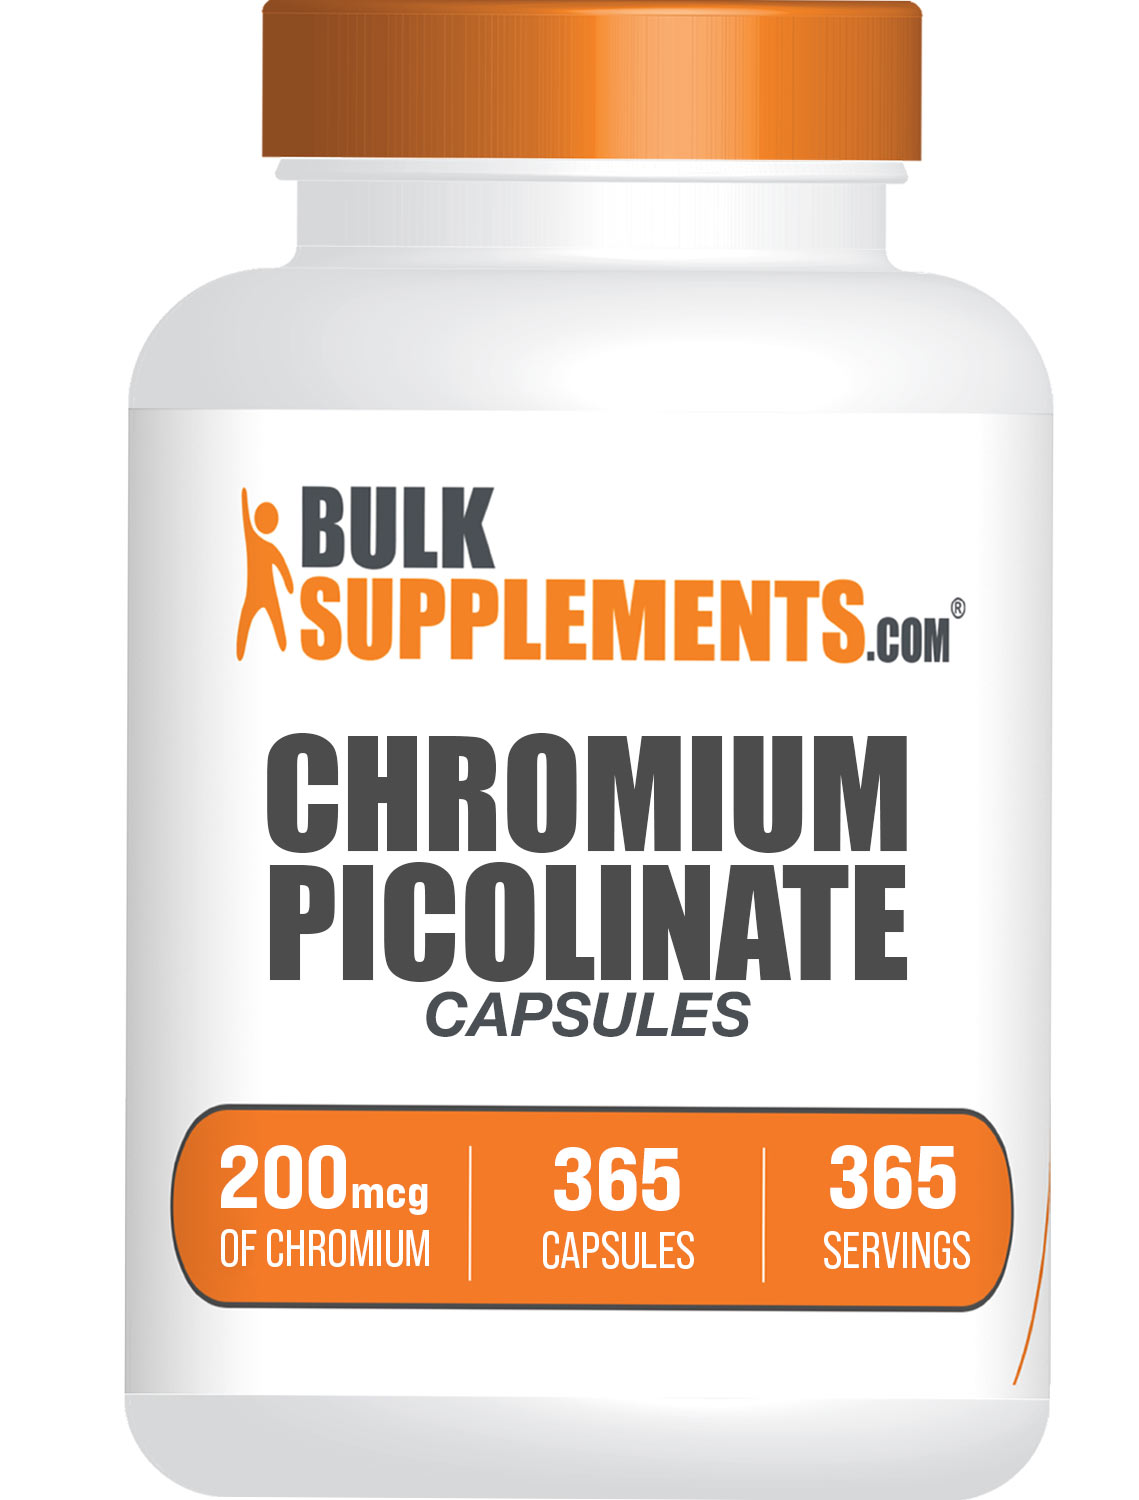 Chromium Picolinate Capsules